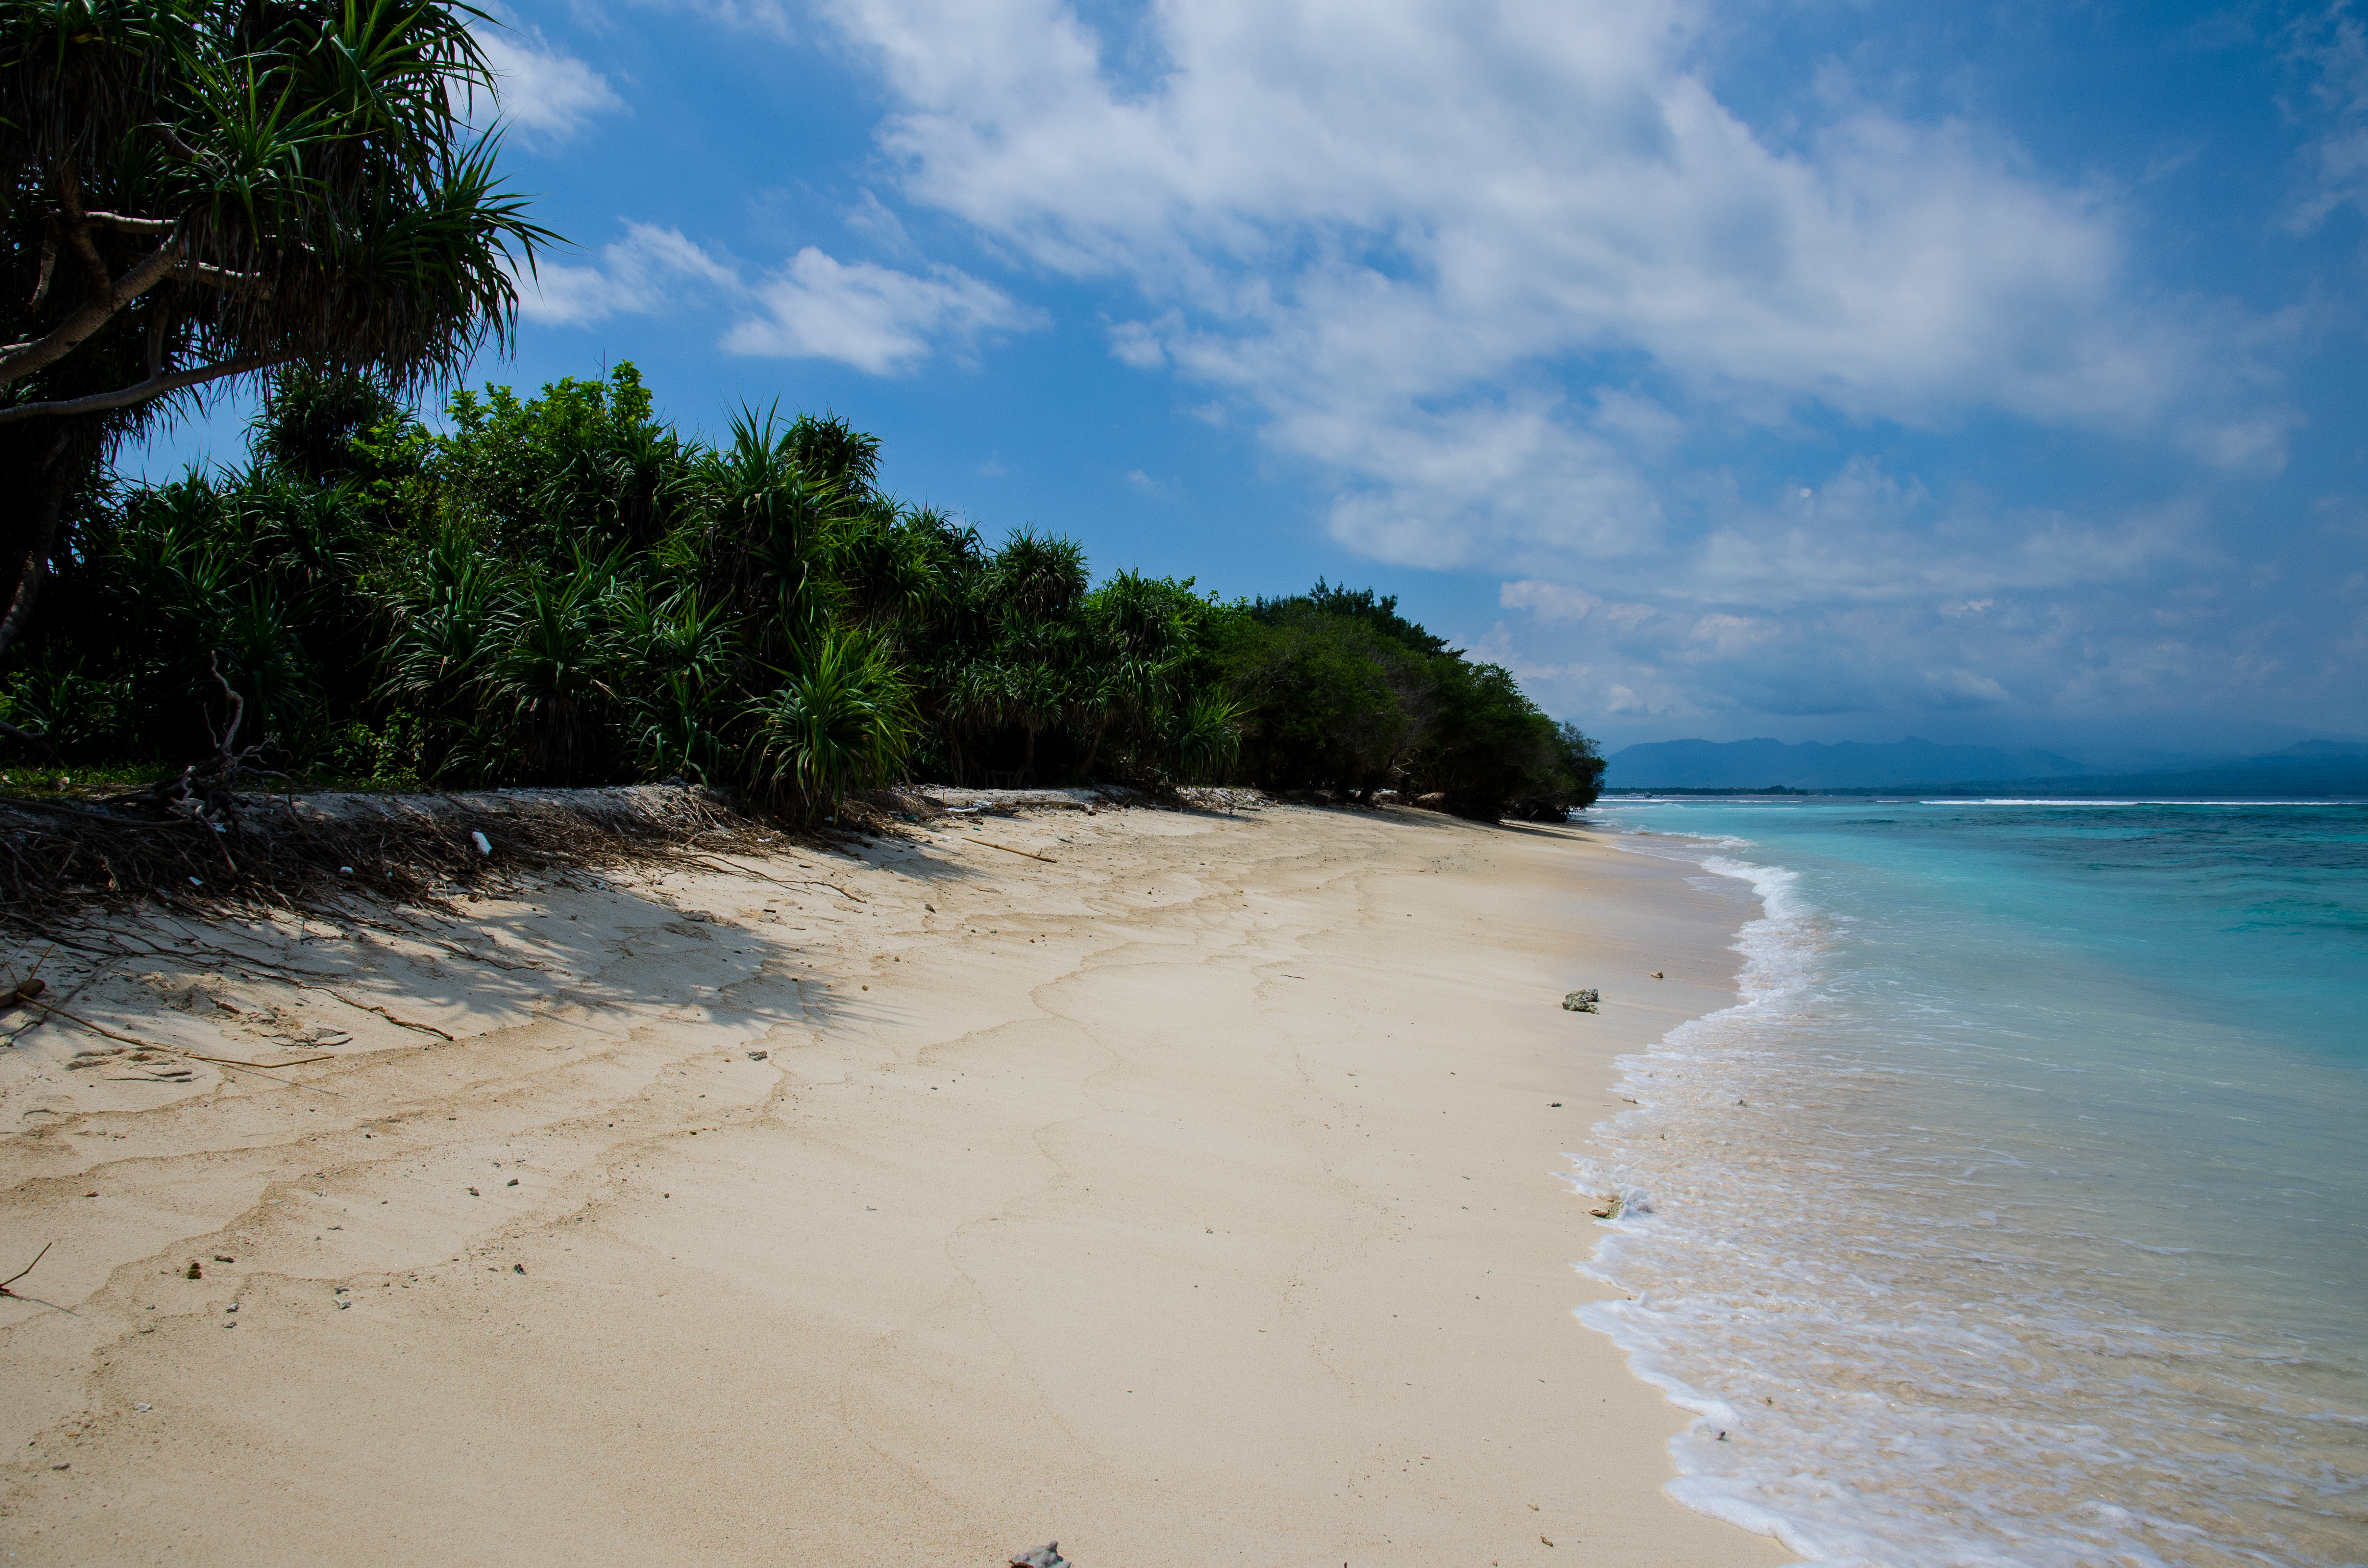 File:Beach-seashore-island-abandoned (24325914385).jpg - Wikimedia ...